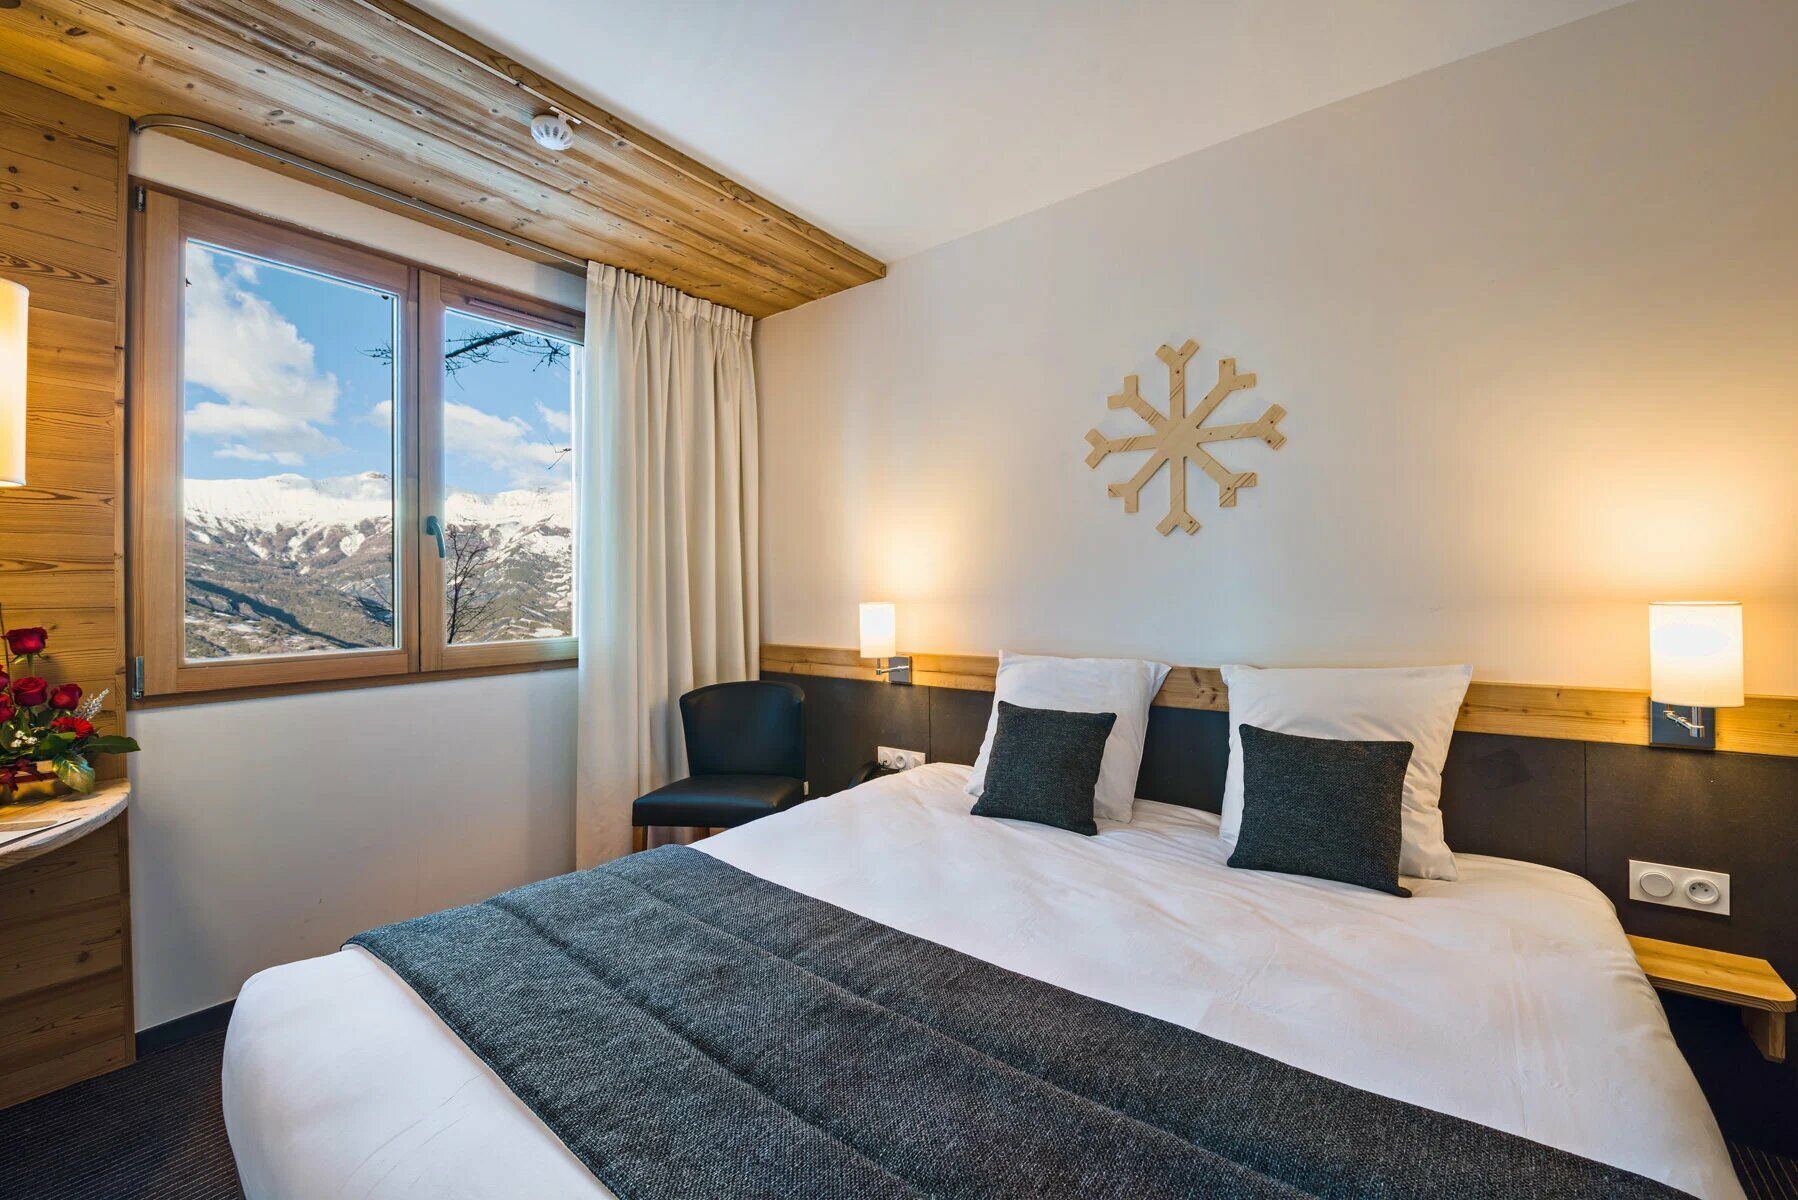 Vacances et séjours spa à la montagne : tous nos séjours bien-être - Marmotel & Spa